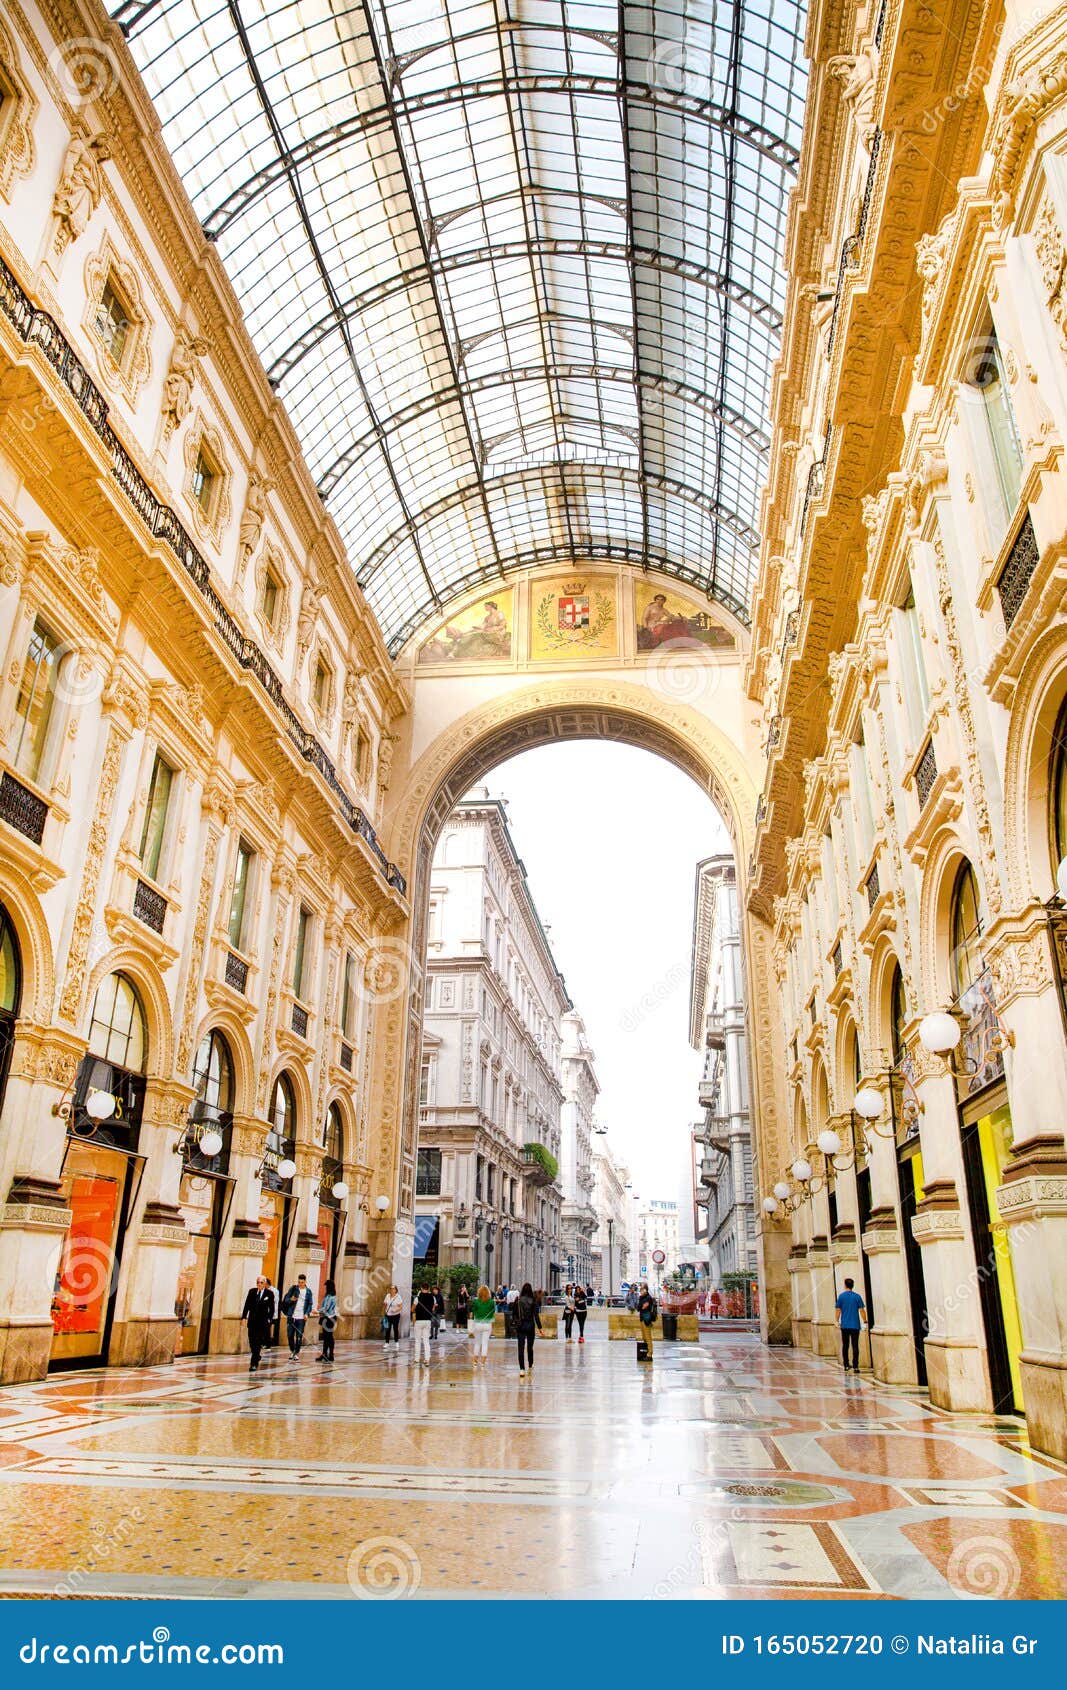 Shopping & Dining at Galleria Vittorio Emanuele II